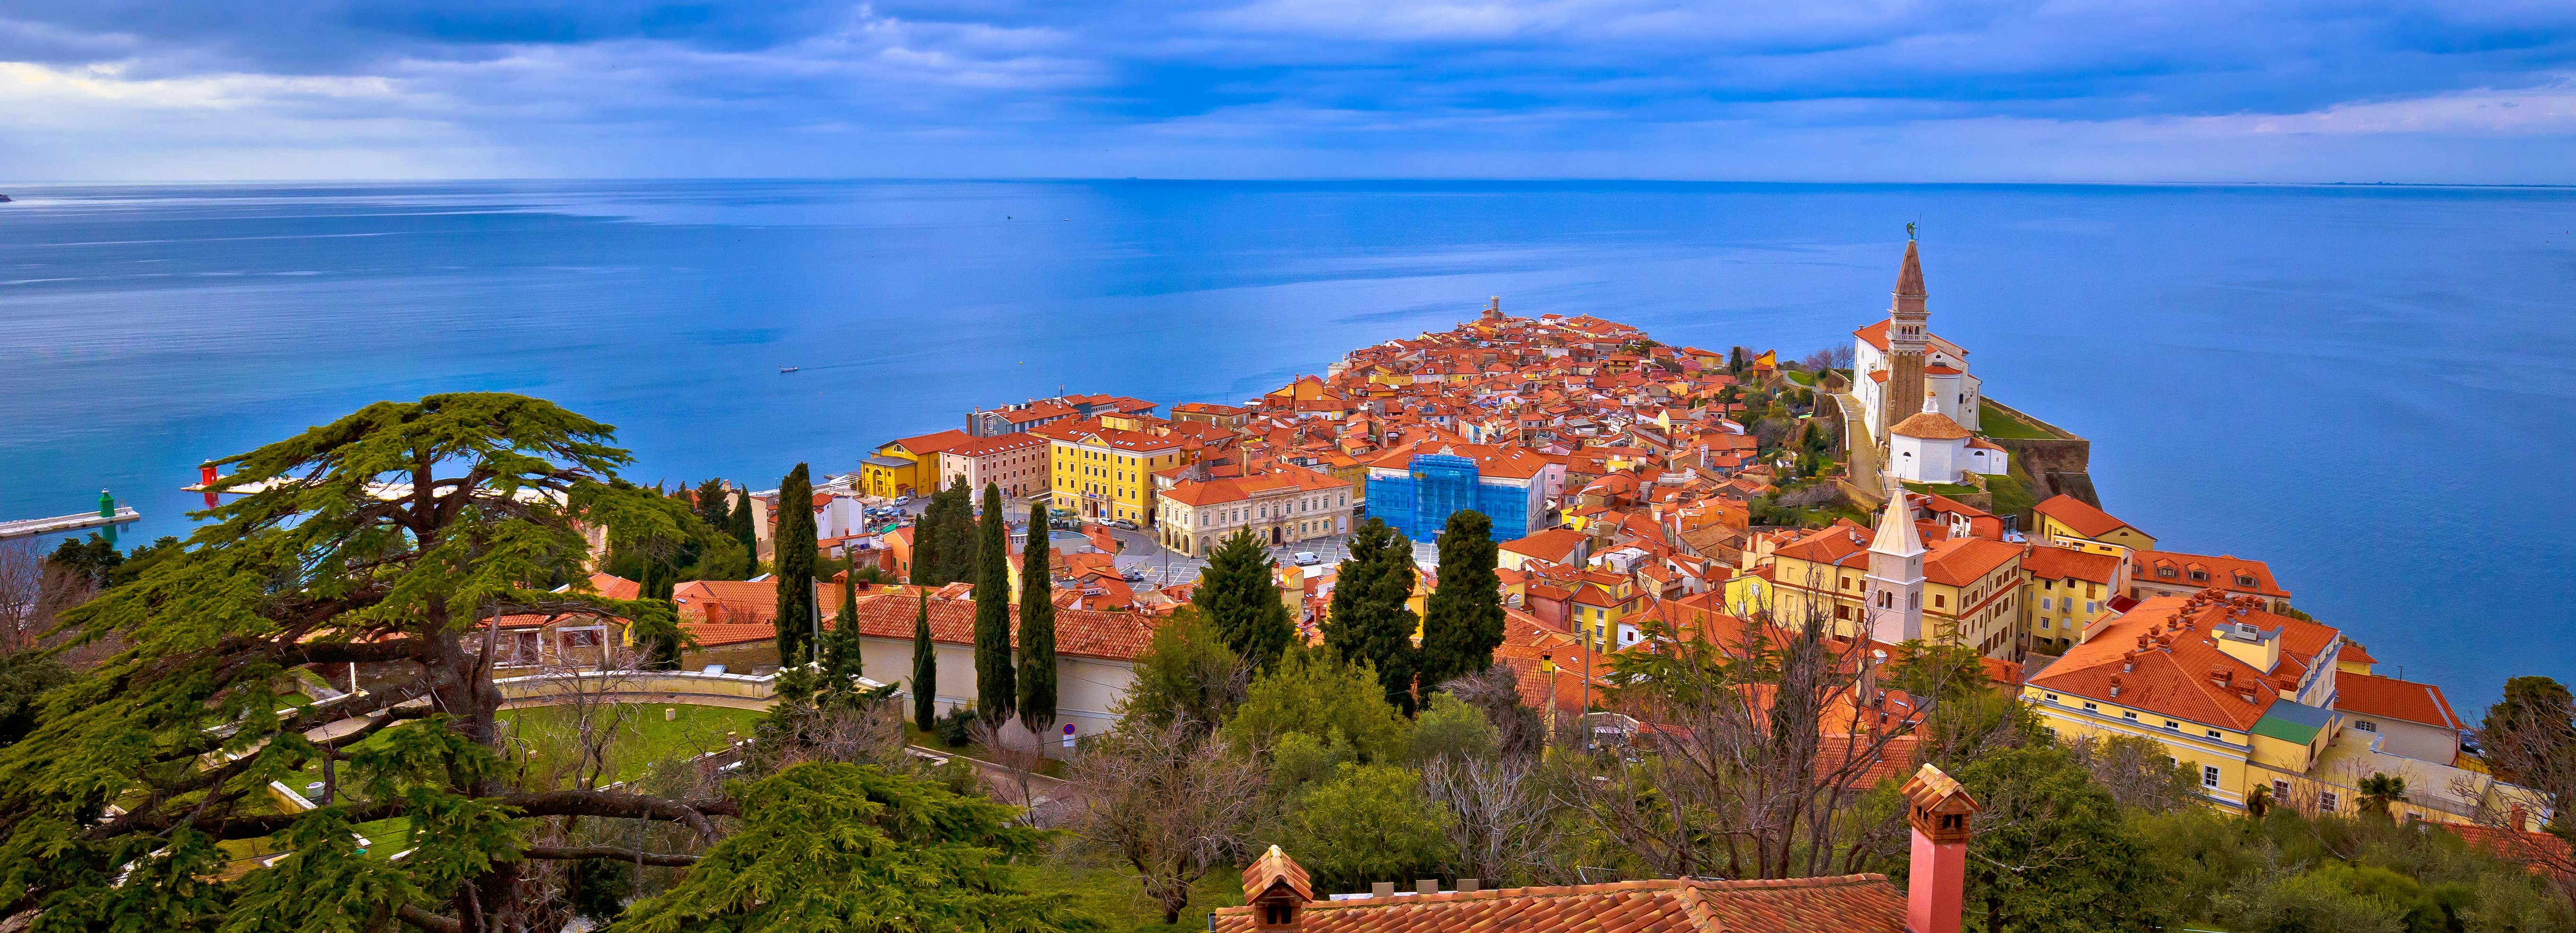 Visite guidée de Piran et de la côte slovène depuis Trieste